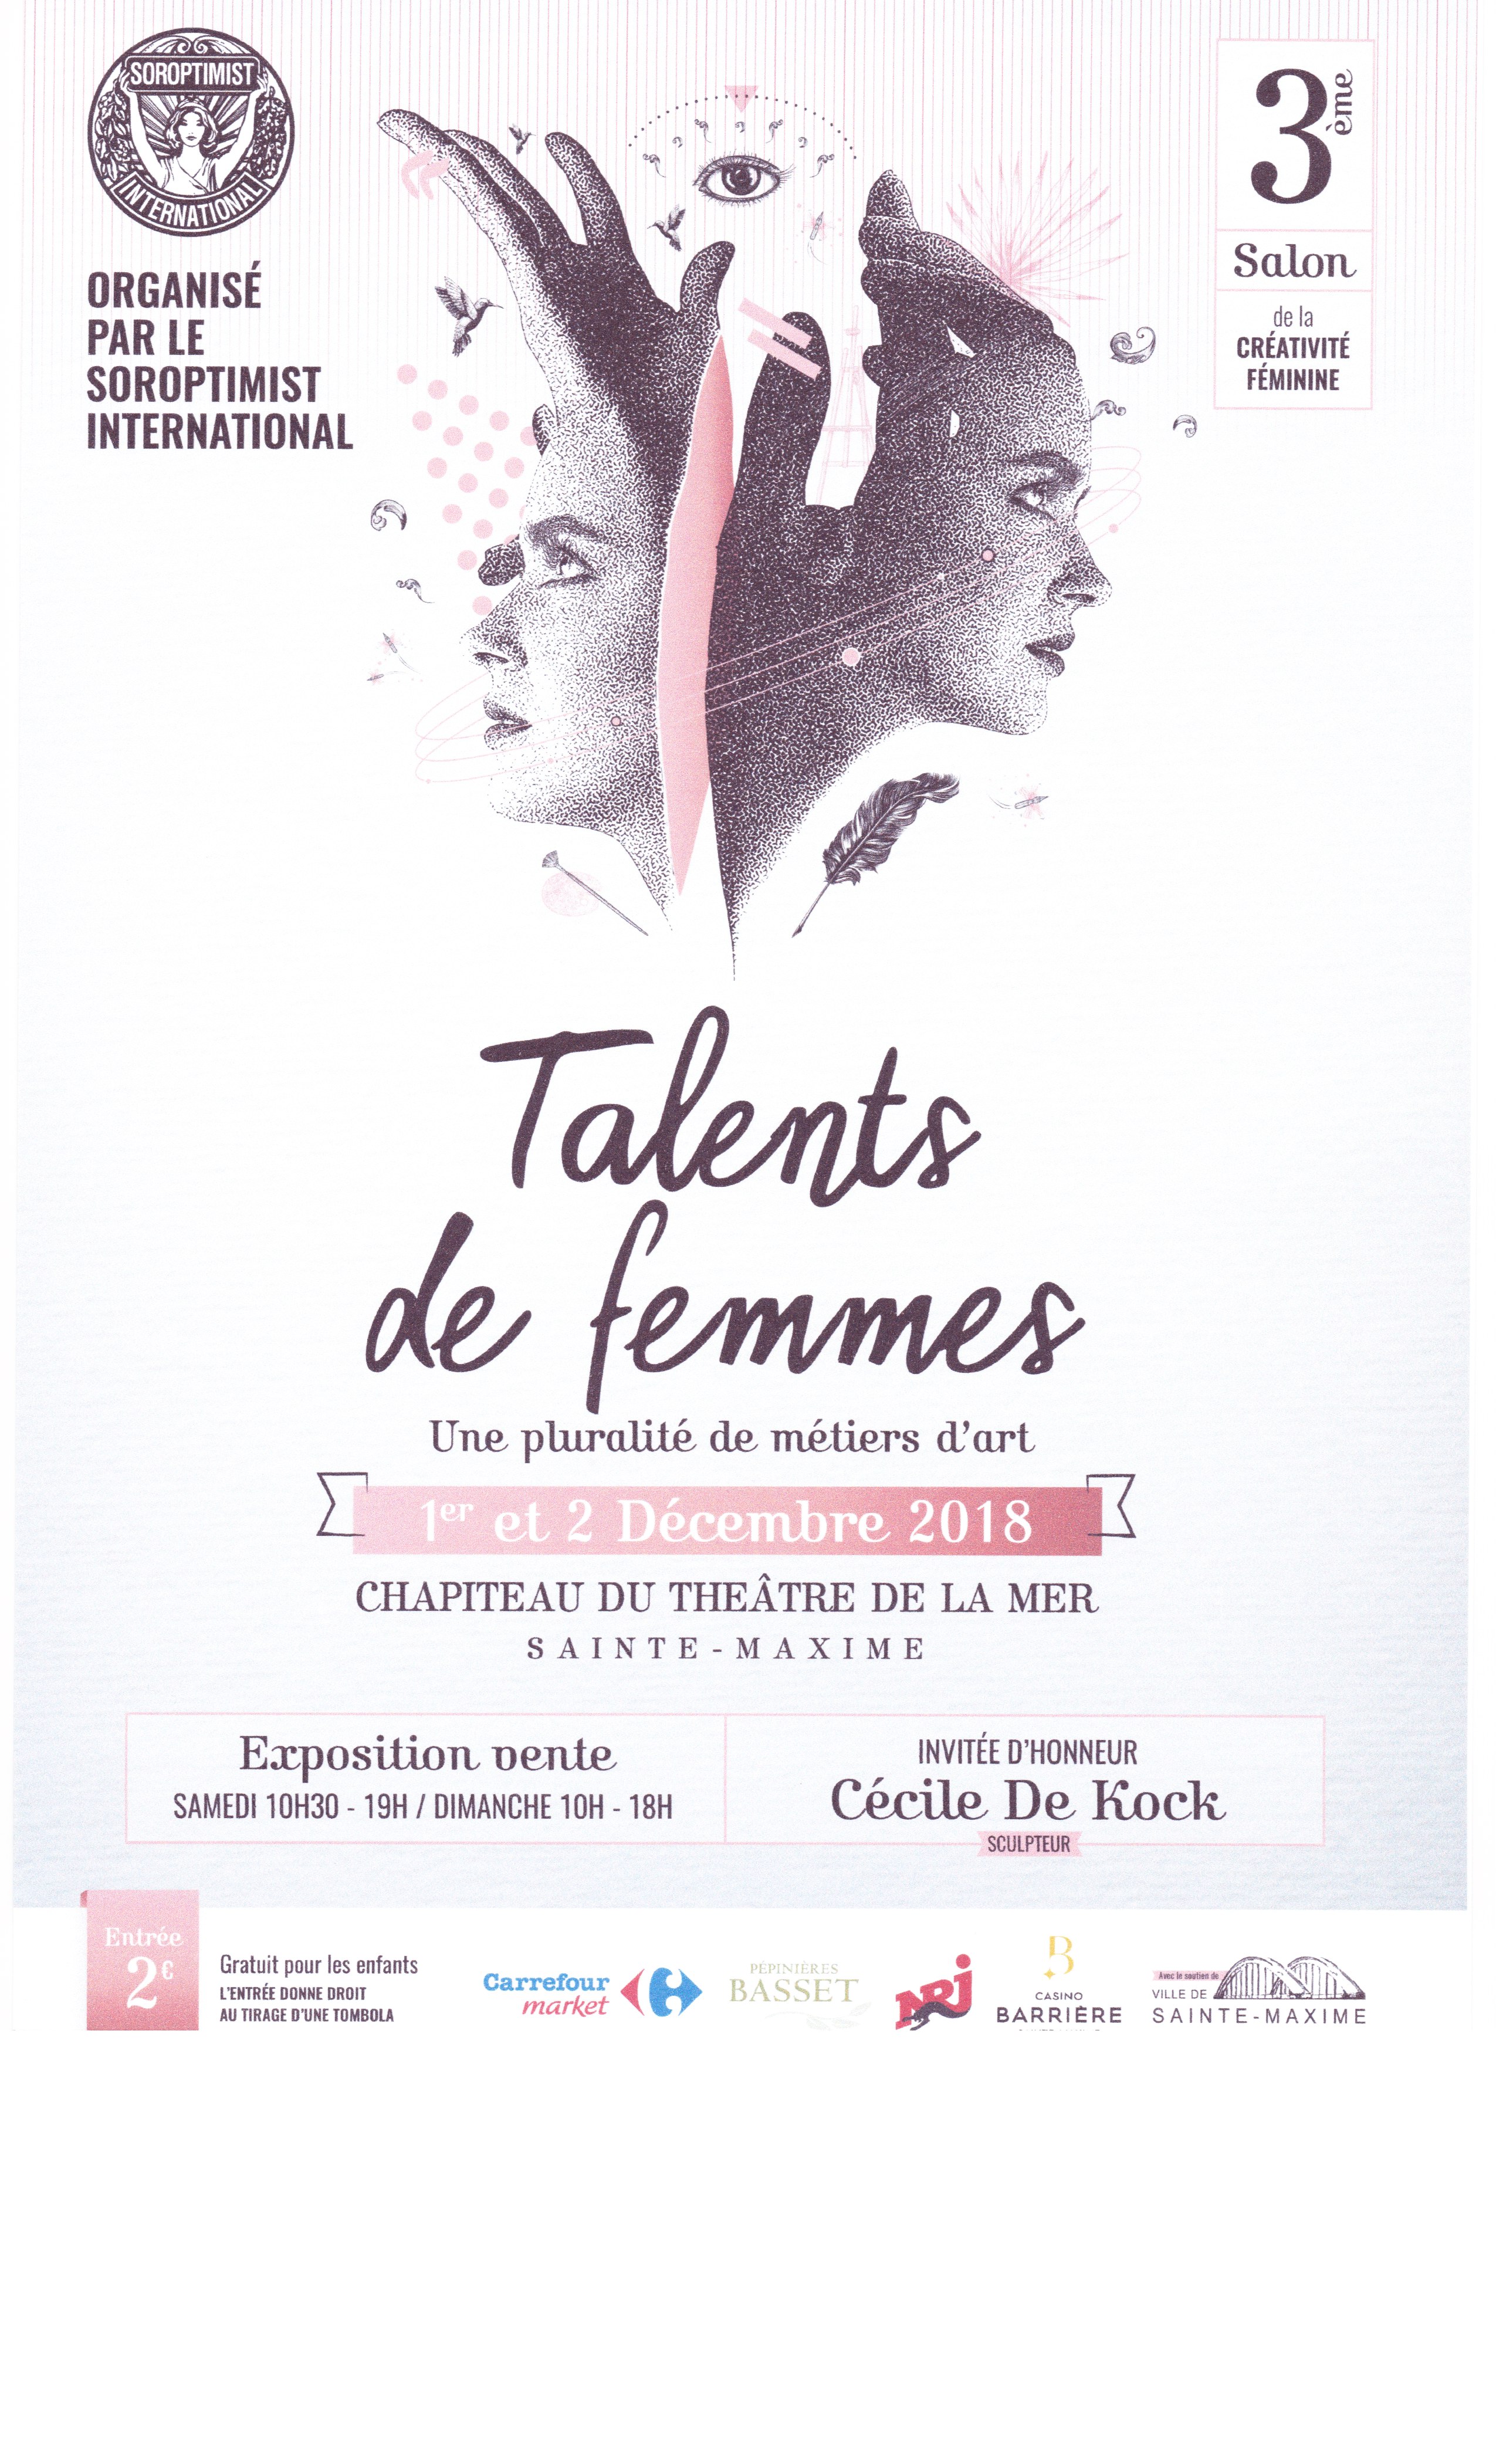 3ème Salon de la créativité féminine - Christel expose ses oeufs sculptés à Sainte-Maxime 